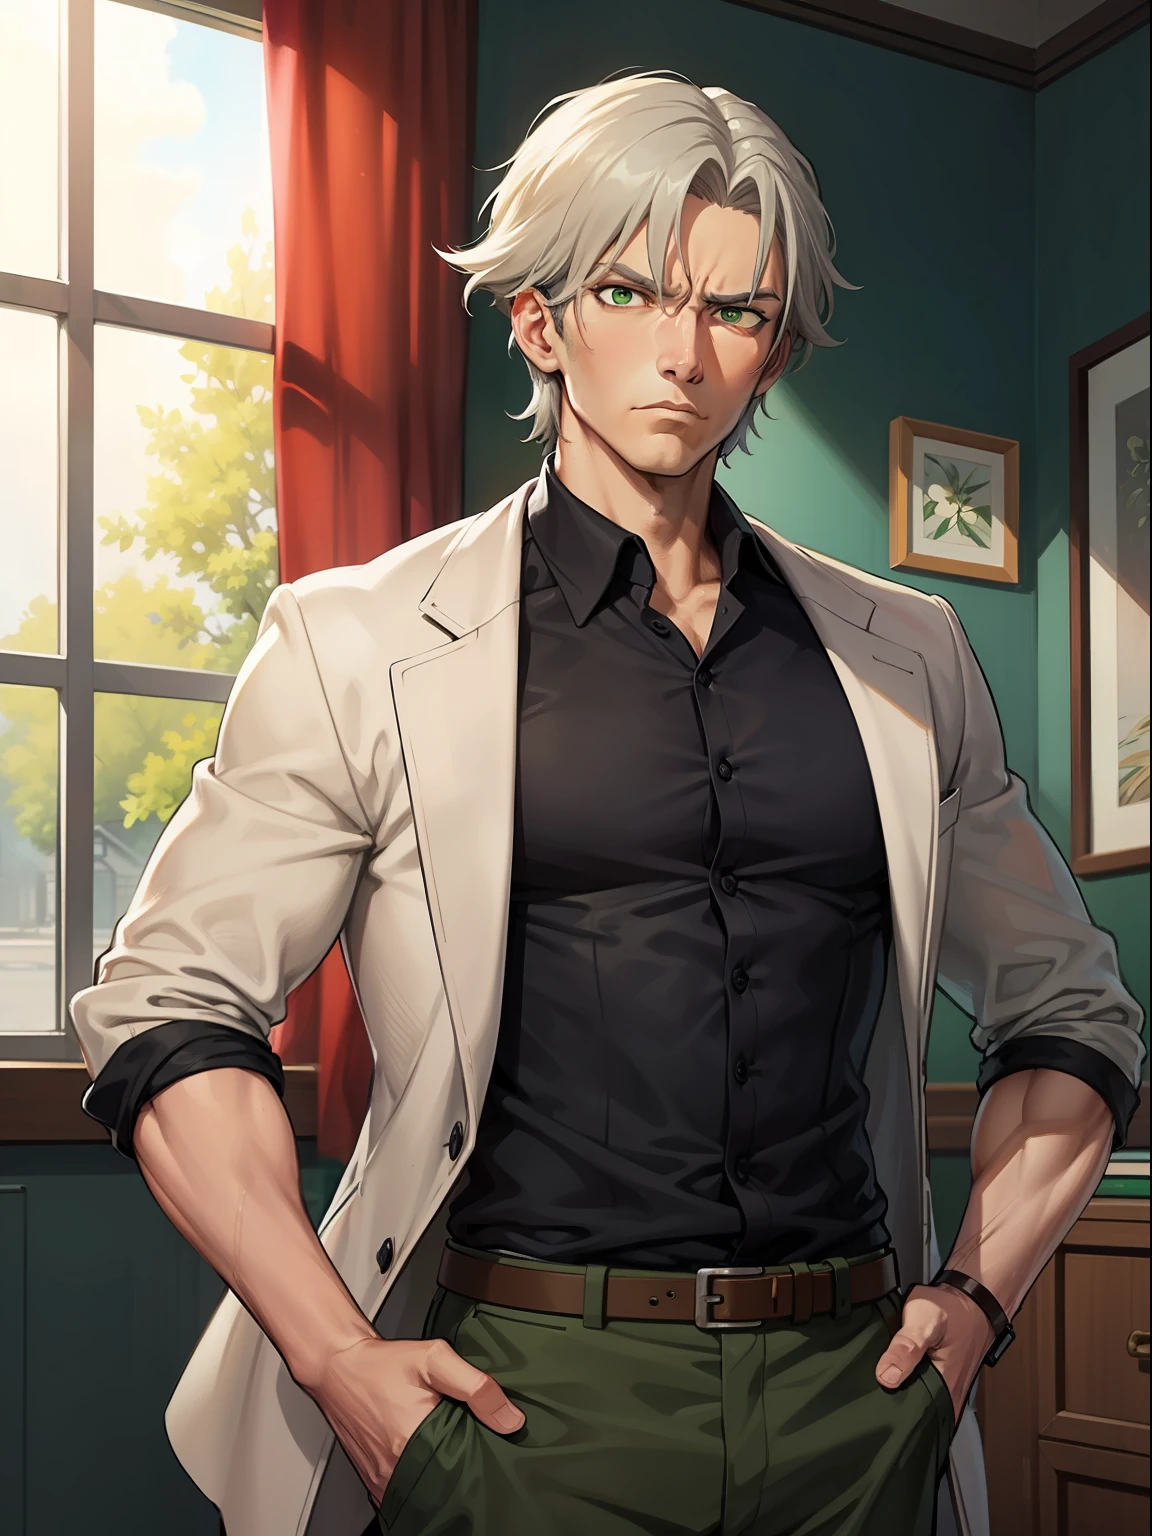 Britischer alter Detektiv mit fitter und großer Figur, Olivgrüne Haut, graue Haare, grüne Augen, und ein ernstes Gesicht, dargestellt im detailreichen Anime-Stil.